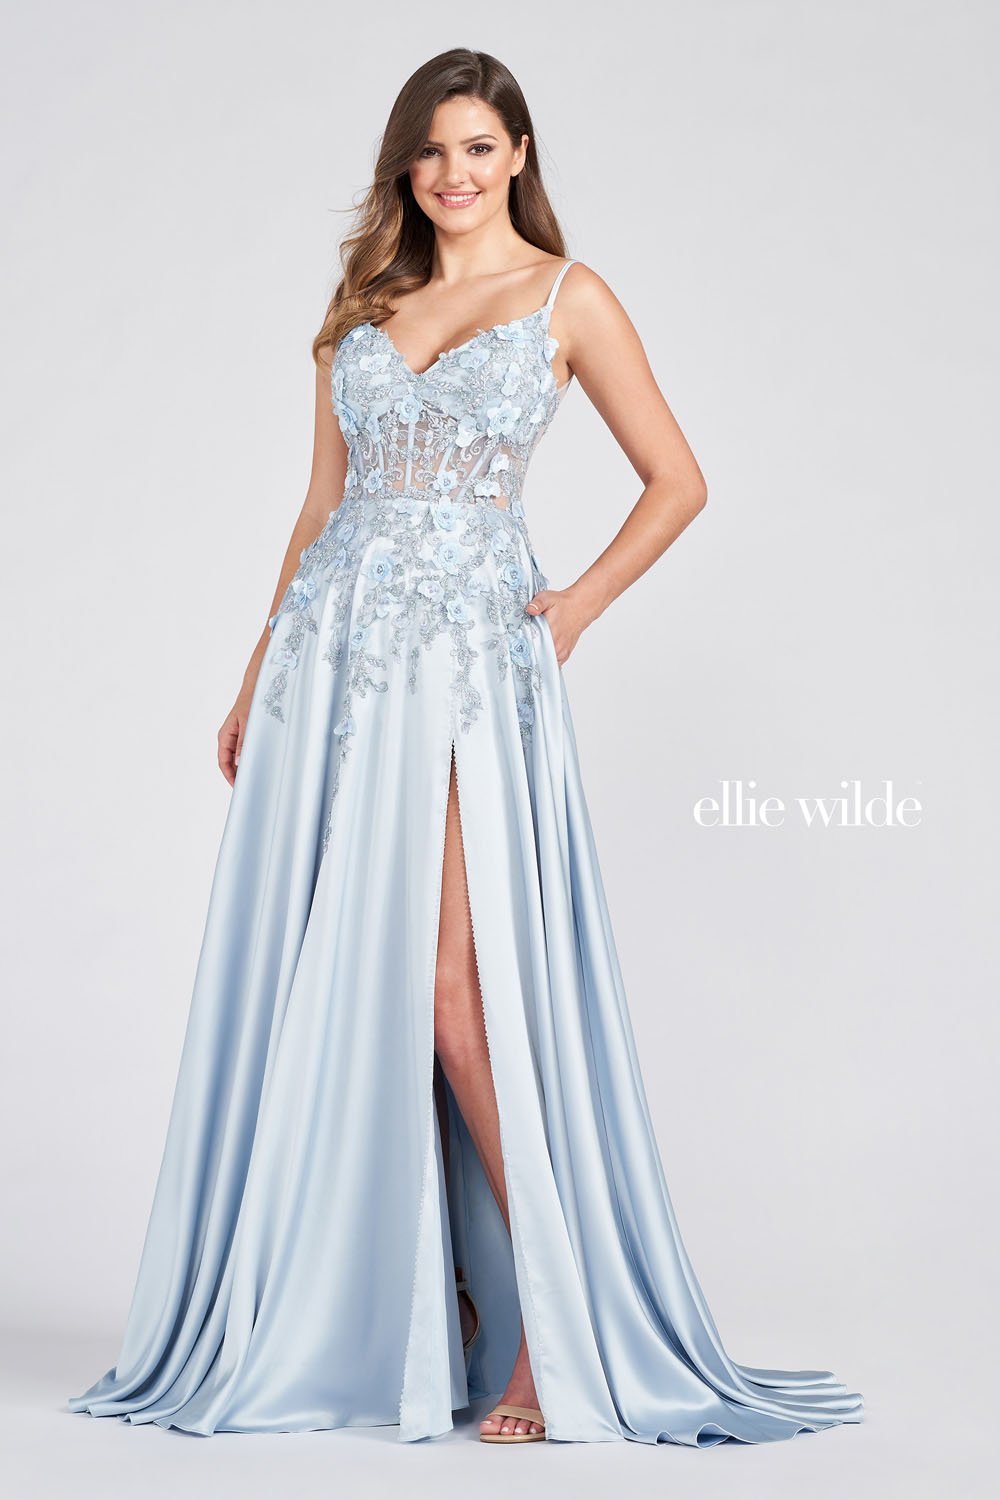 Ellie Wilde Dusty Blue EW122038 Prom Dress Image.  Dusty Blue formal dress.